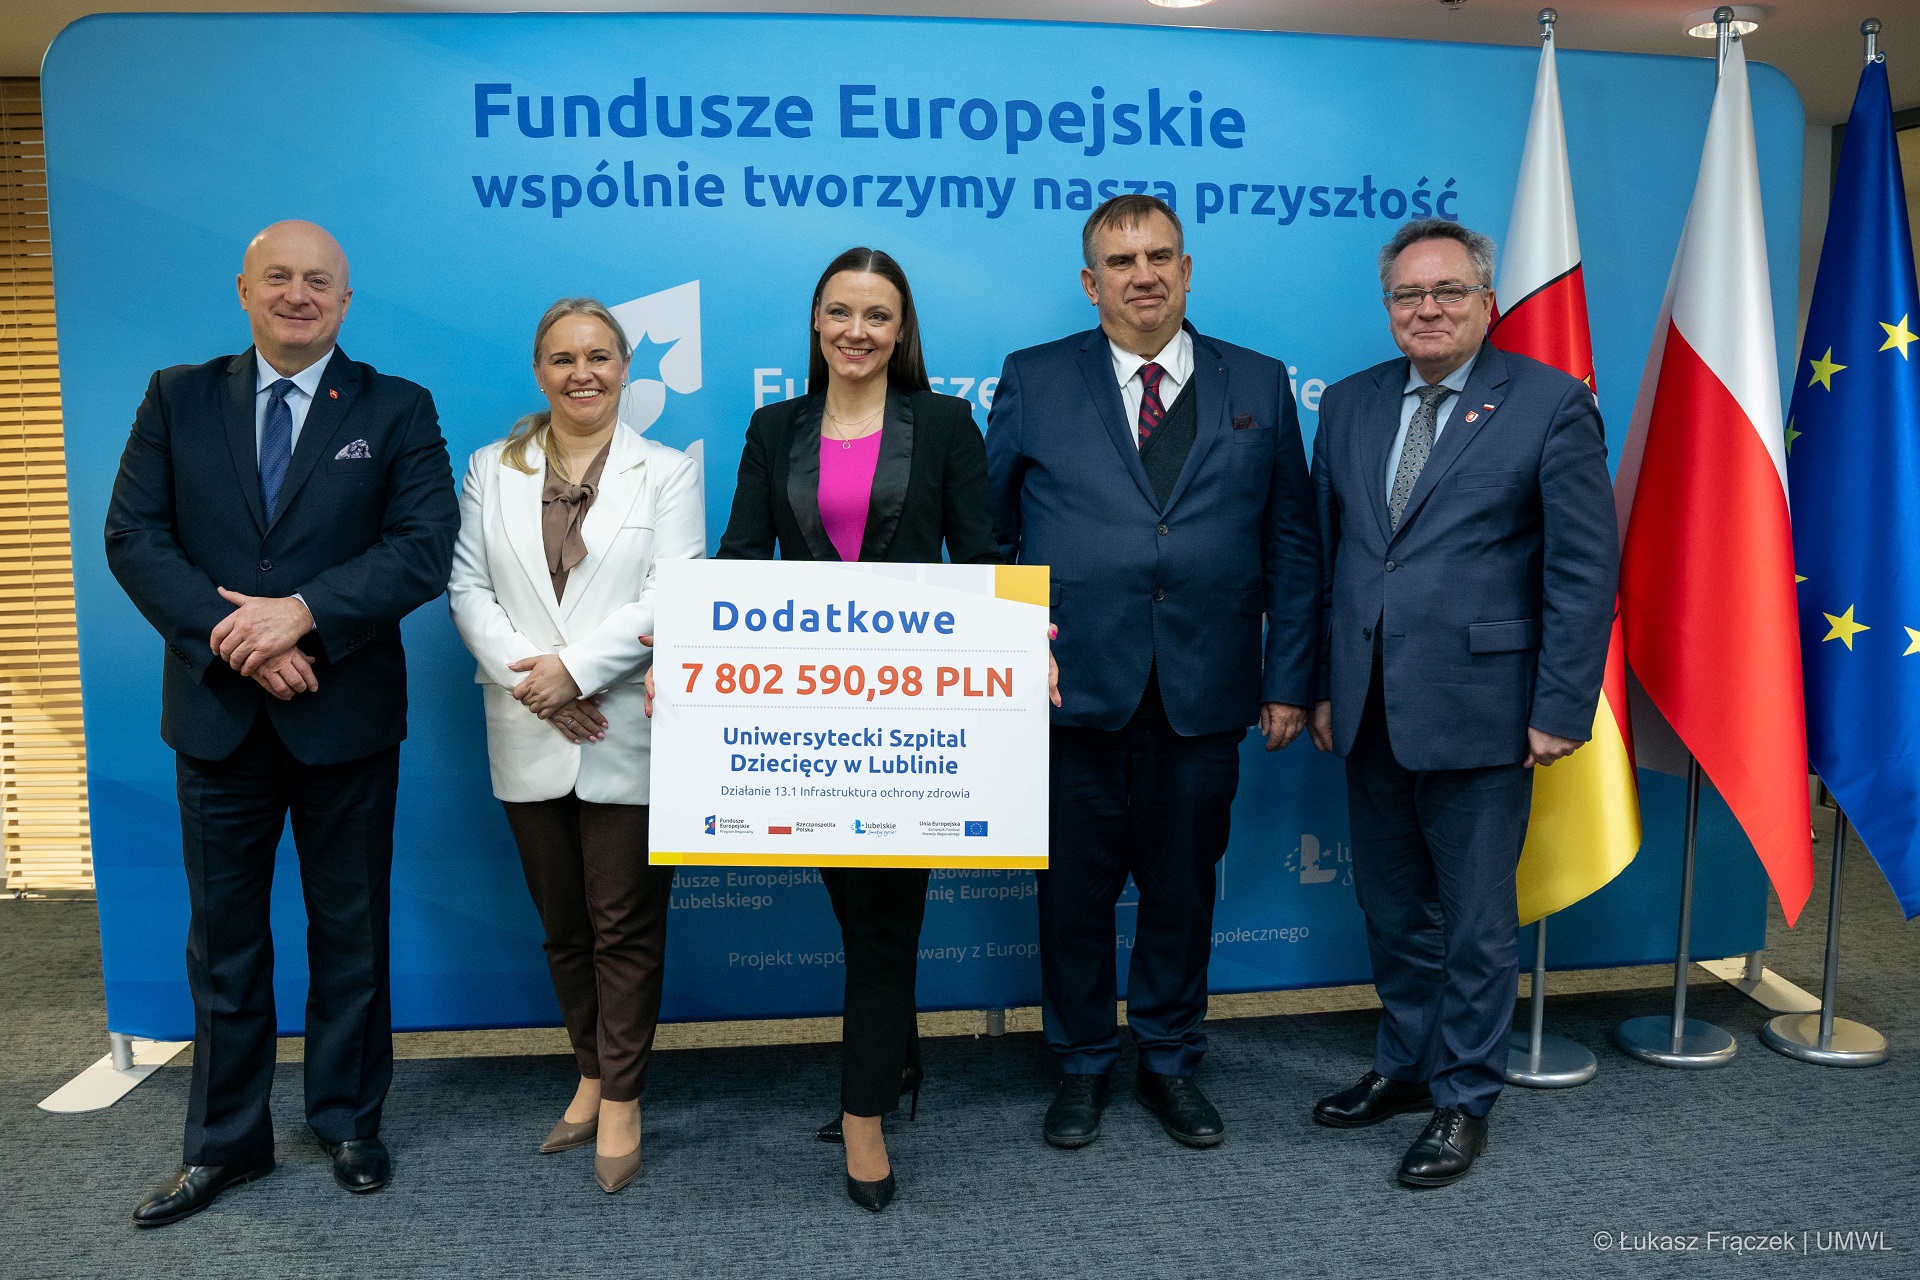 Dodatkowe środki unijne dla Uniwersyteckiego Szpitala Dziecięcego w Lublinie